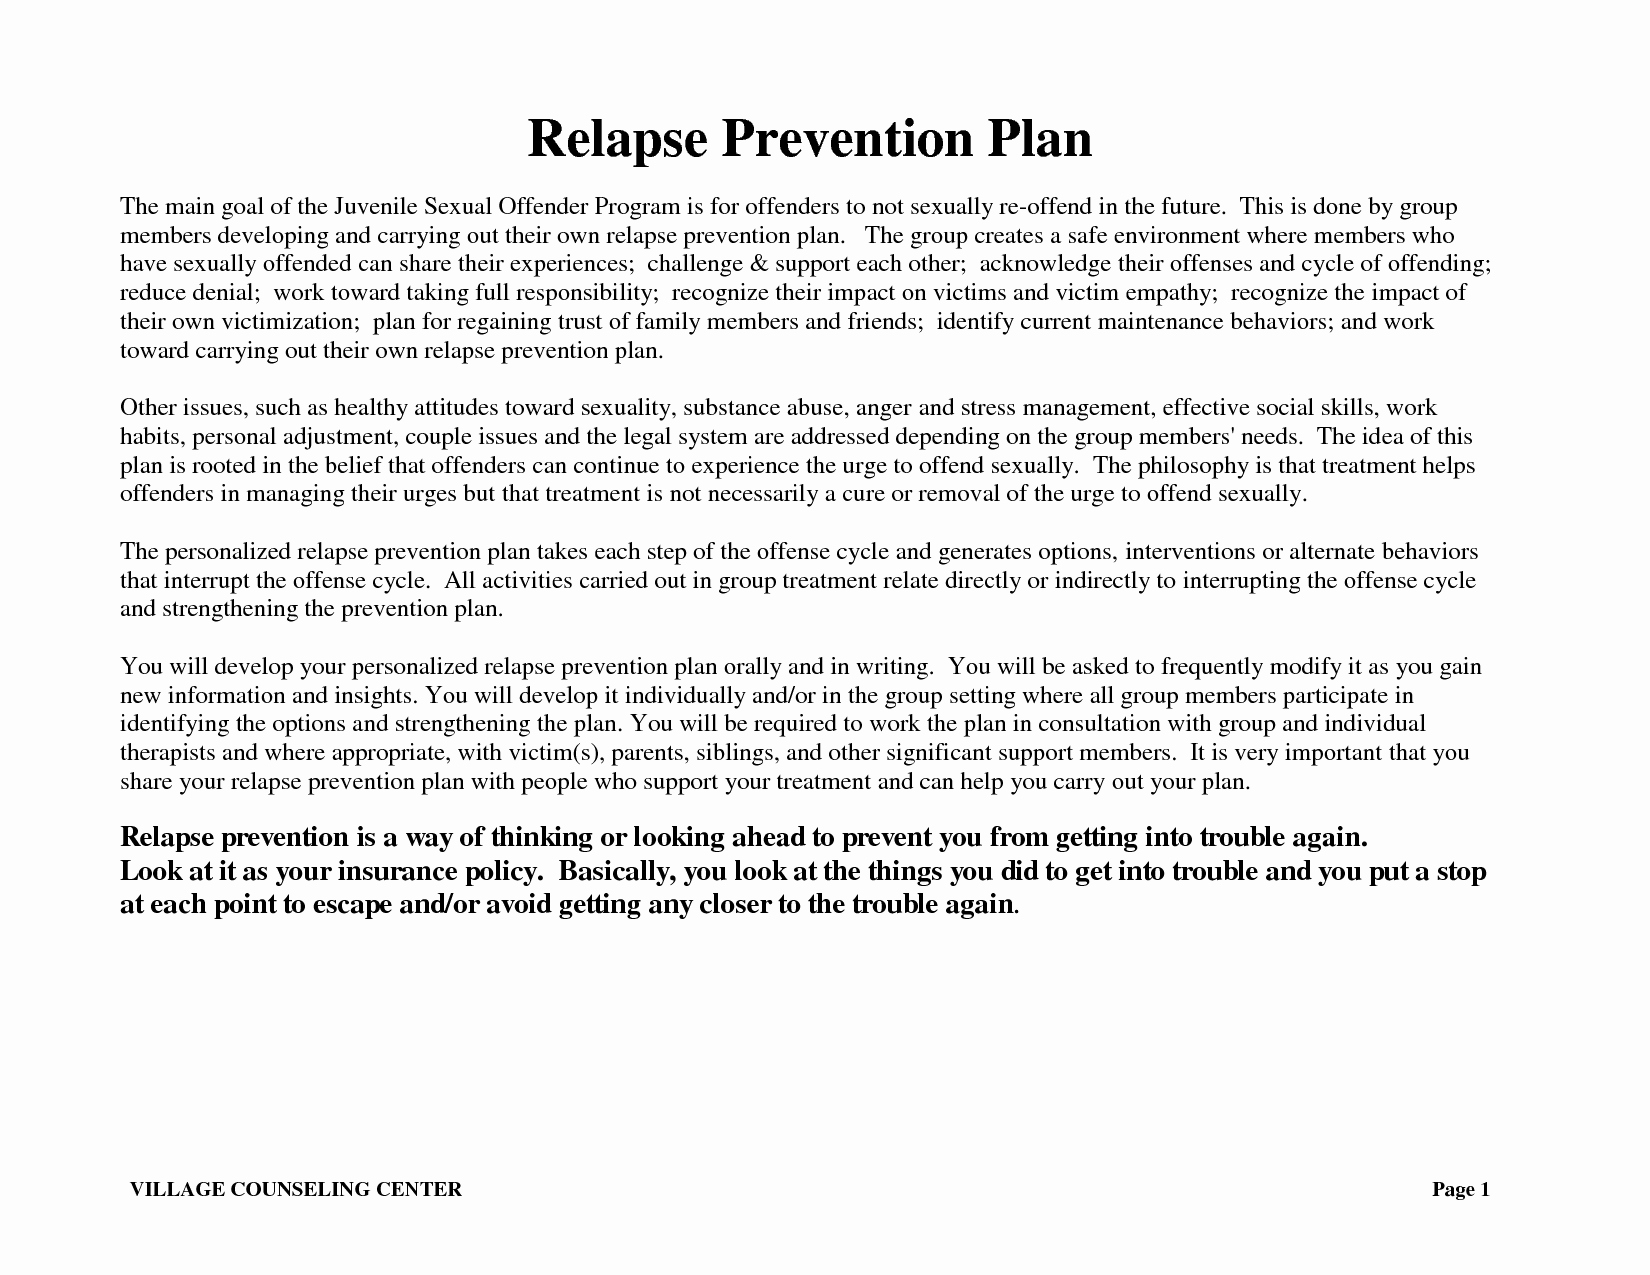 Relapse Prevention Plan Worksheet Template New Worksheet Wellness Recovery Action Plan Worksheets Grass